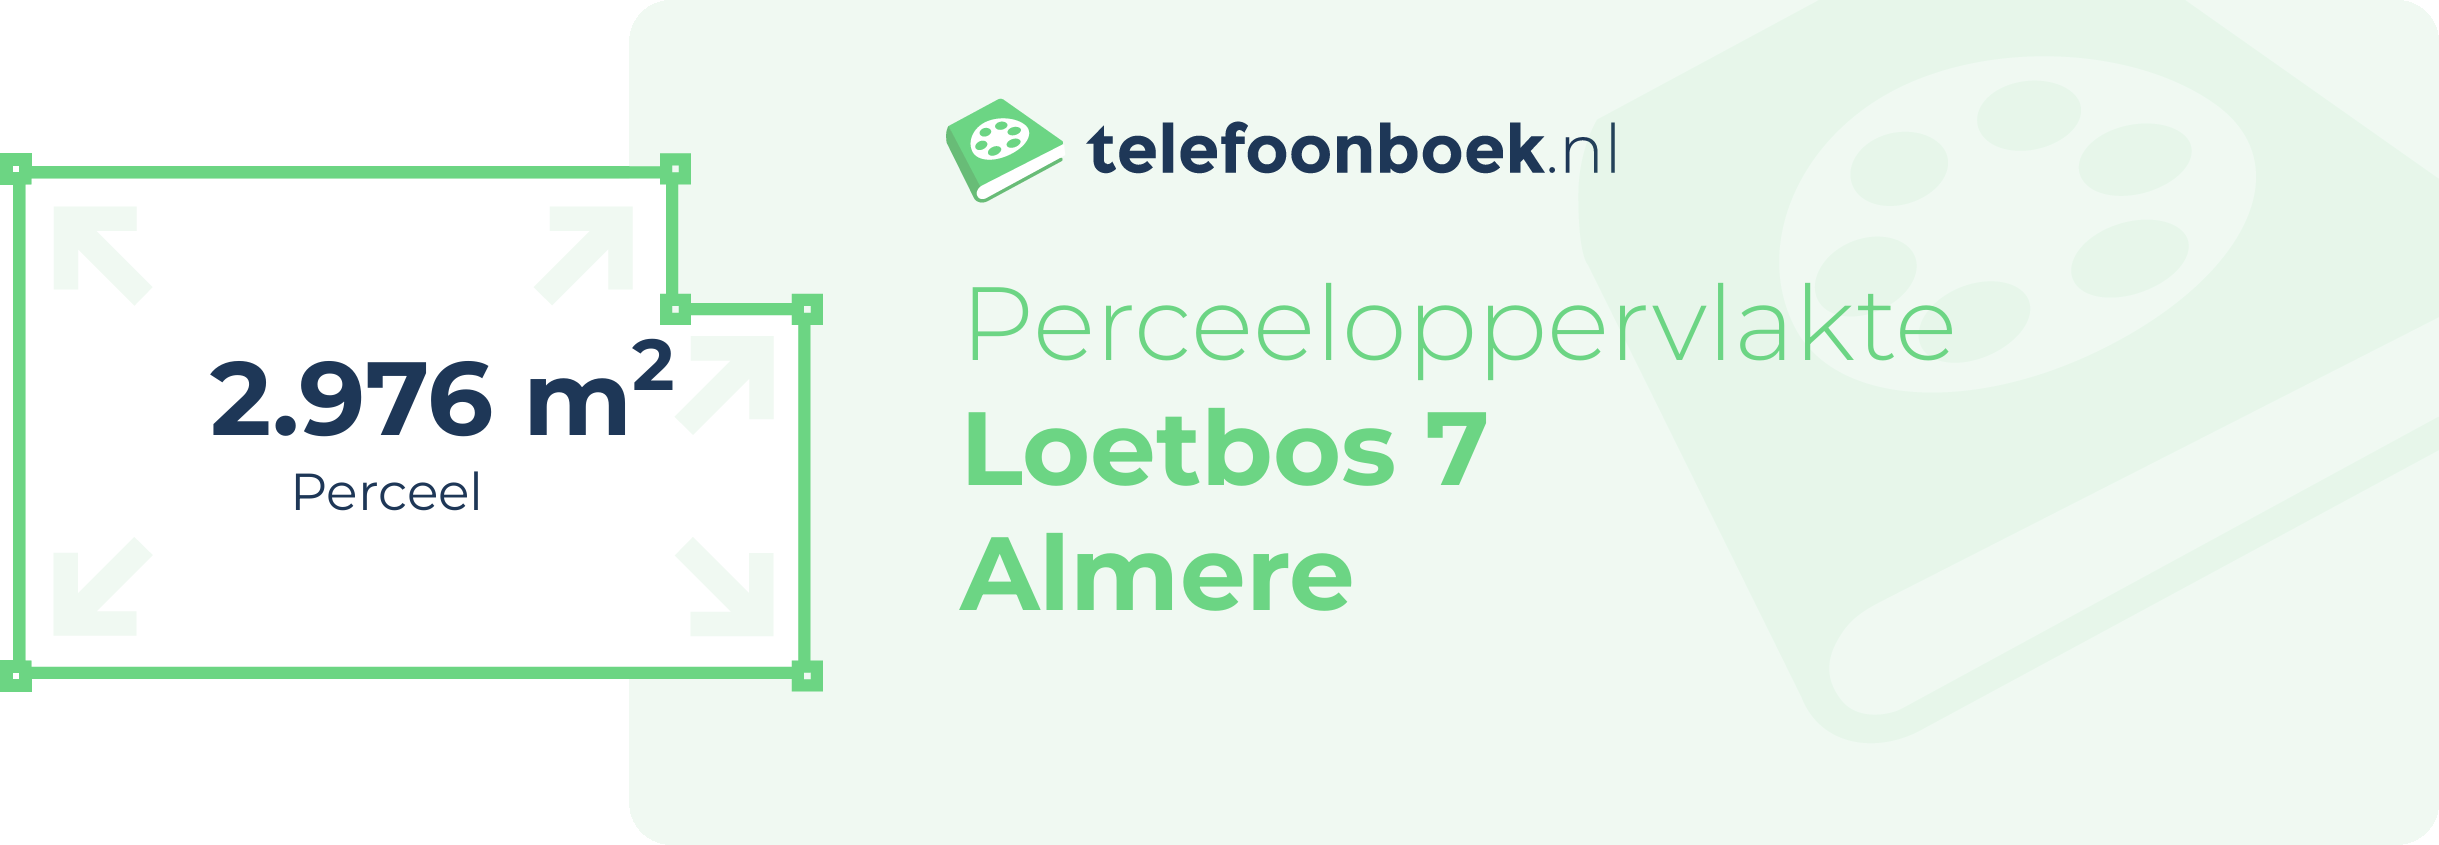 Perceeloppervlakte Loetbos 7 Almere